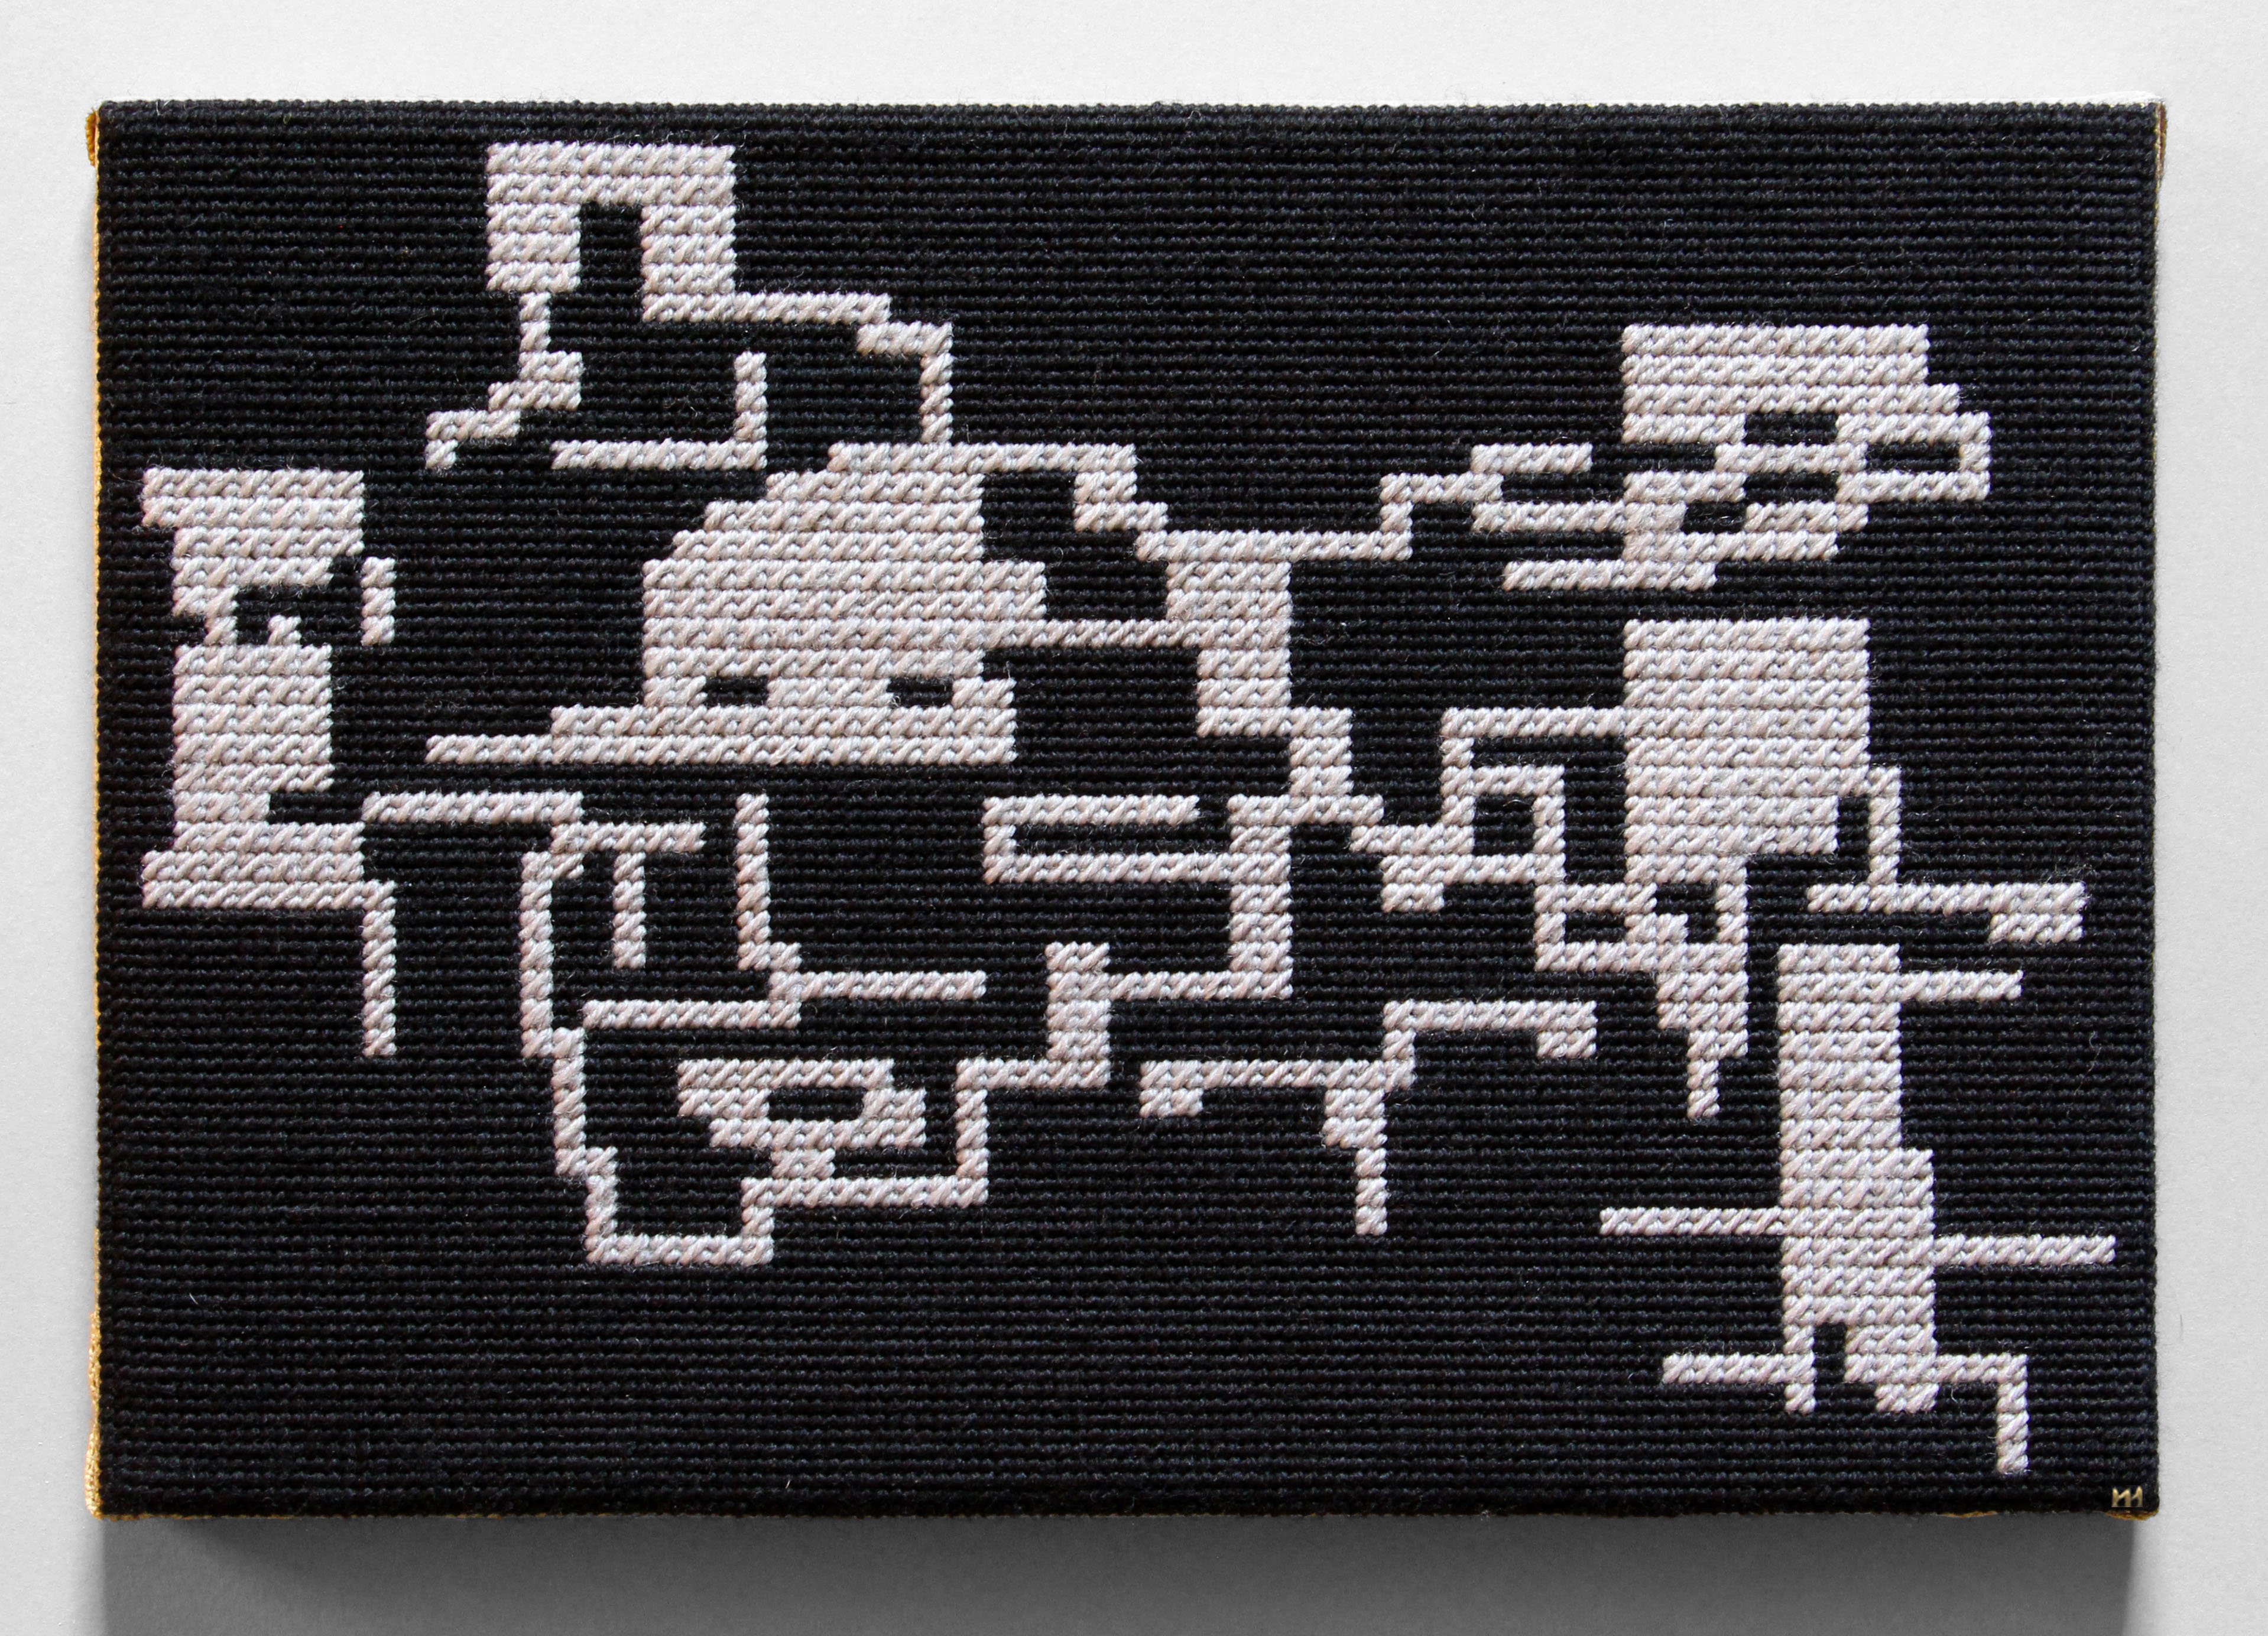  / Tapisserie à l’aiguille au petit point et point mosaïque représentant la carte du jeu vidéo *Metroid II: The Return of Samus*, dans sa version Game Boy. Œuvre de l’artiste Marine Beaufils.